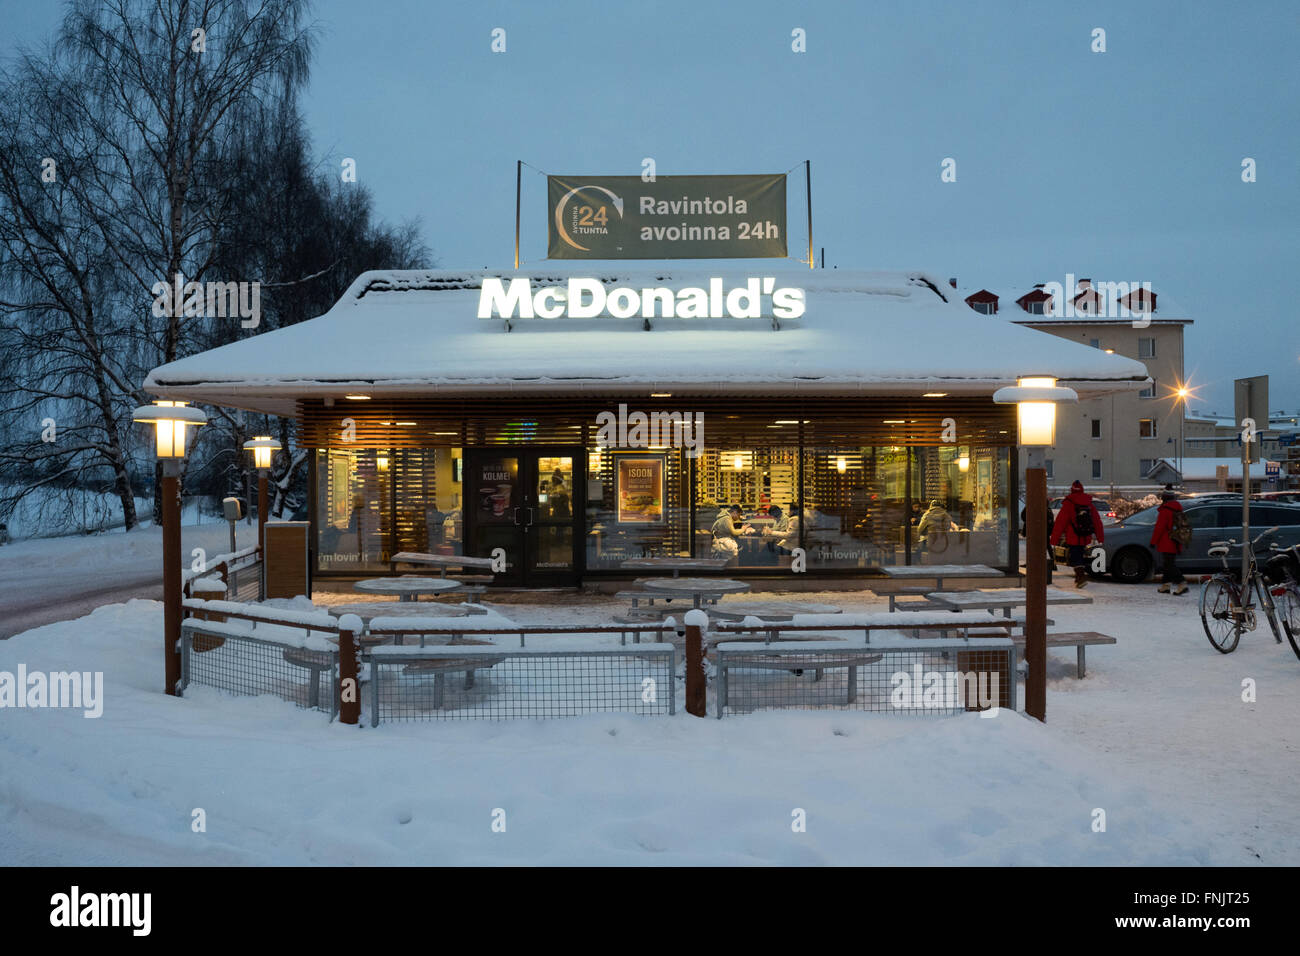 Rovaniemi, Laponie. 08Th Feb 2016. Un restaurant de la chaîne de restauration rapide McDonald's à Rovaniemi, Laponie, 06 février 2016. Elle est la plus septentrionale des McDonald's dans l'Union européenne. Rovaniemi est situé au cercle polaire. Photo : Peter Endig - AUCUN FIL - SERVICE/dpa/Alamy Live News Banque D'Images